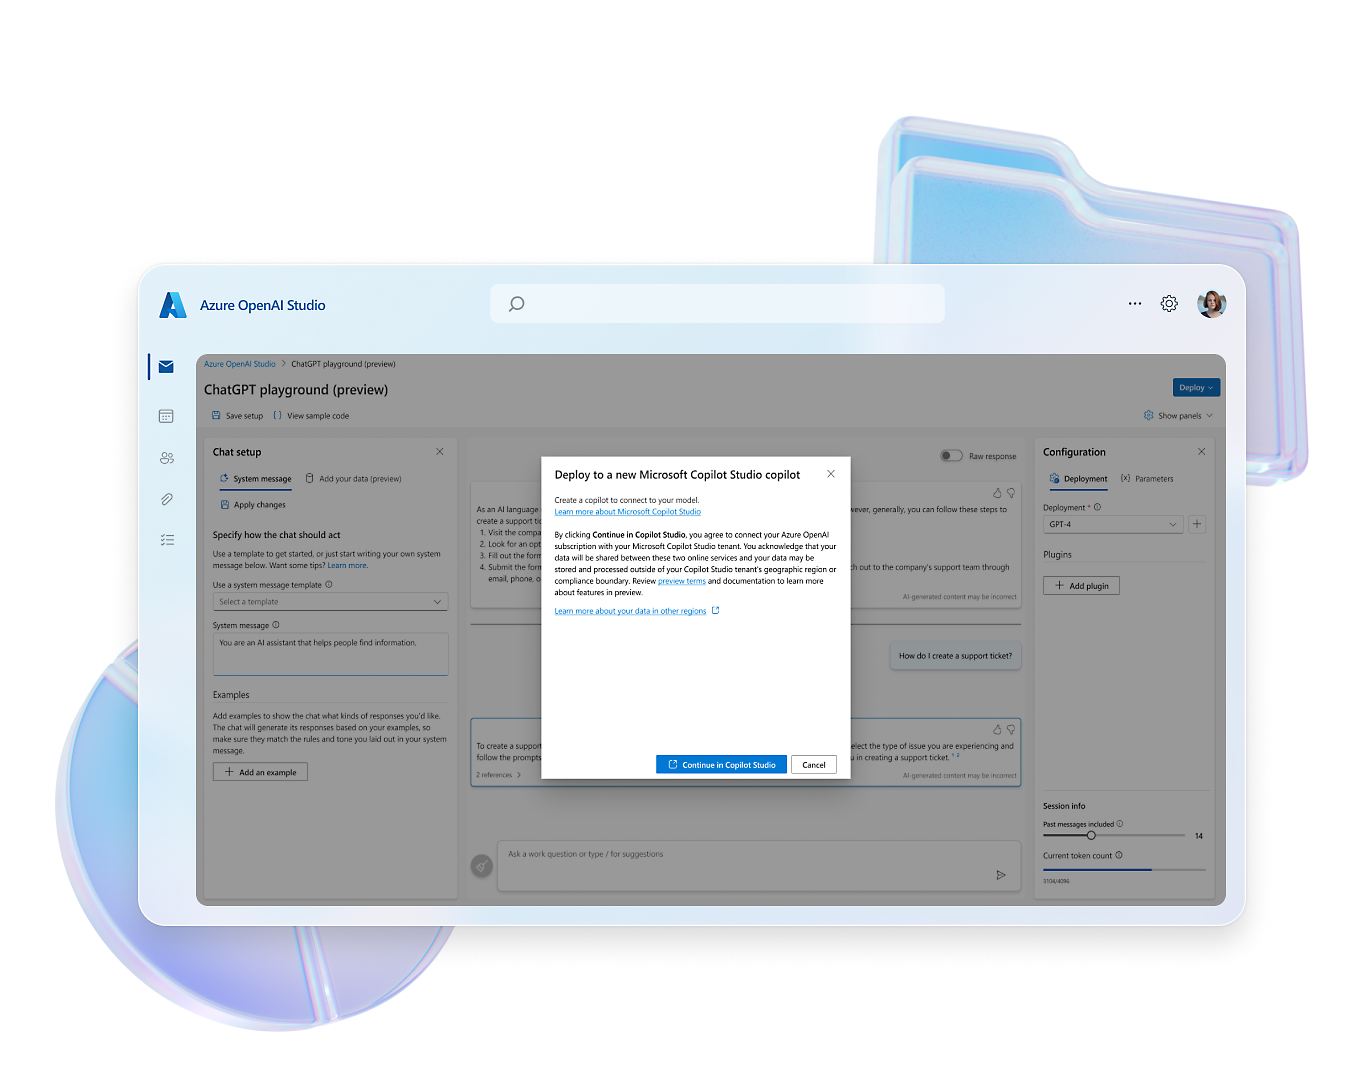 สกรีนช็อตของ Azure OpenAI Studio กำลังแสดงกล่องโต้ตอบที่เกี่ยวข้องกับการปรับใช้ผู้ช่วยใหม่